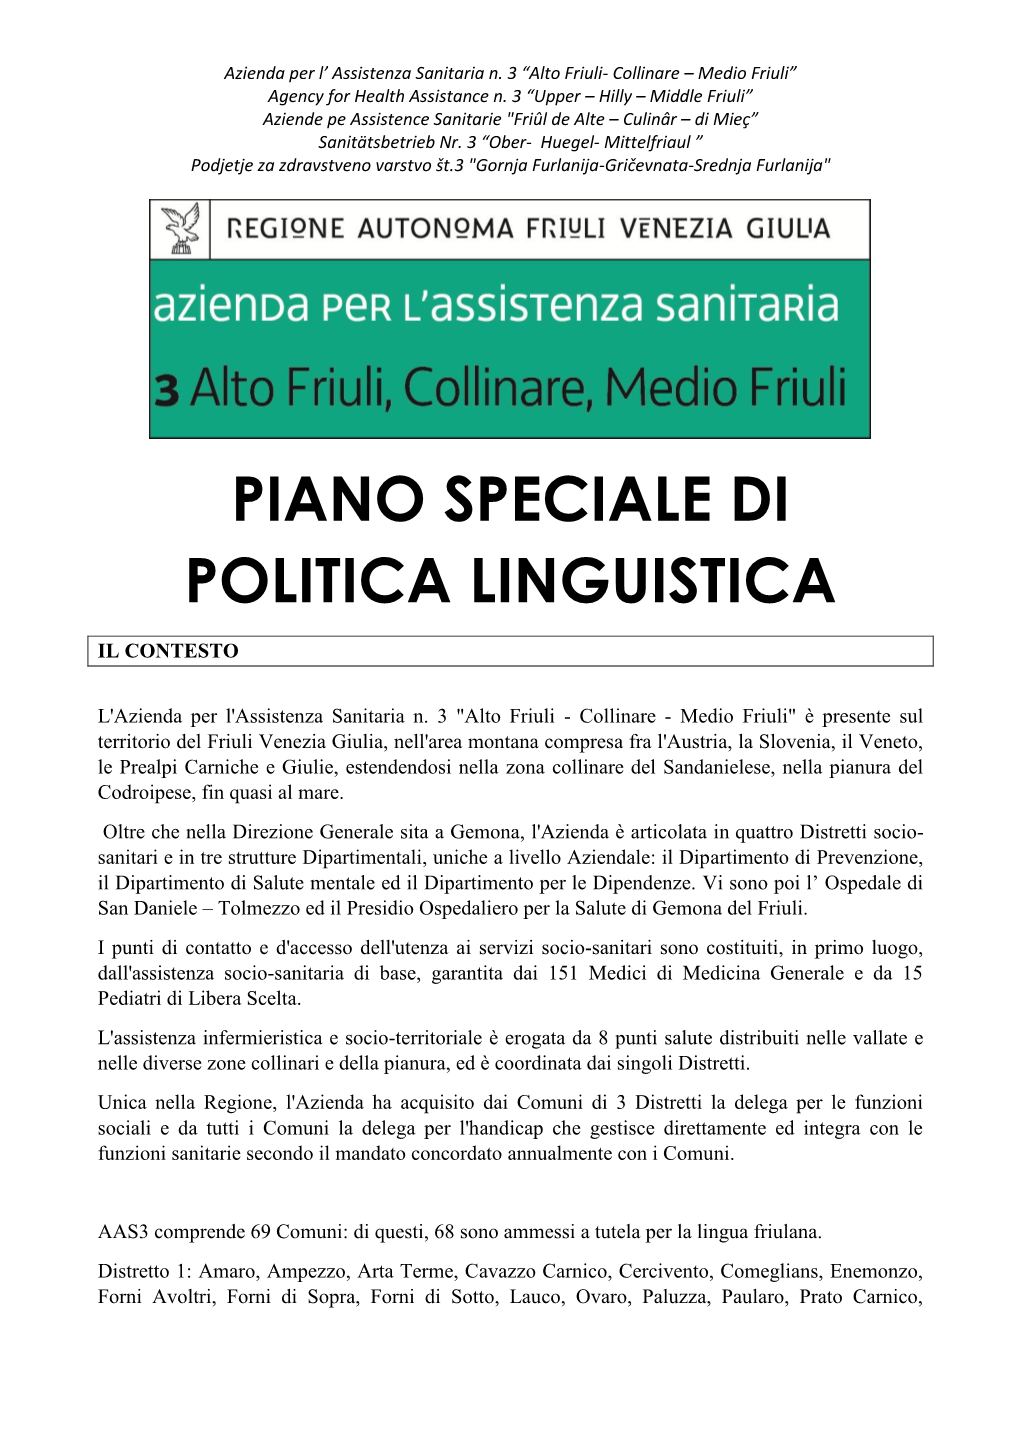 Piano Speciale Di Politica Linguistica